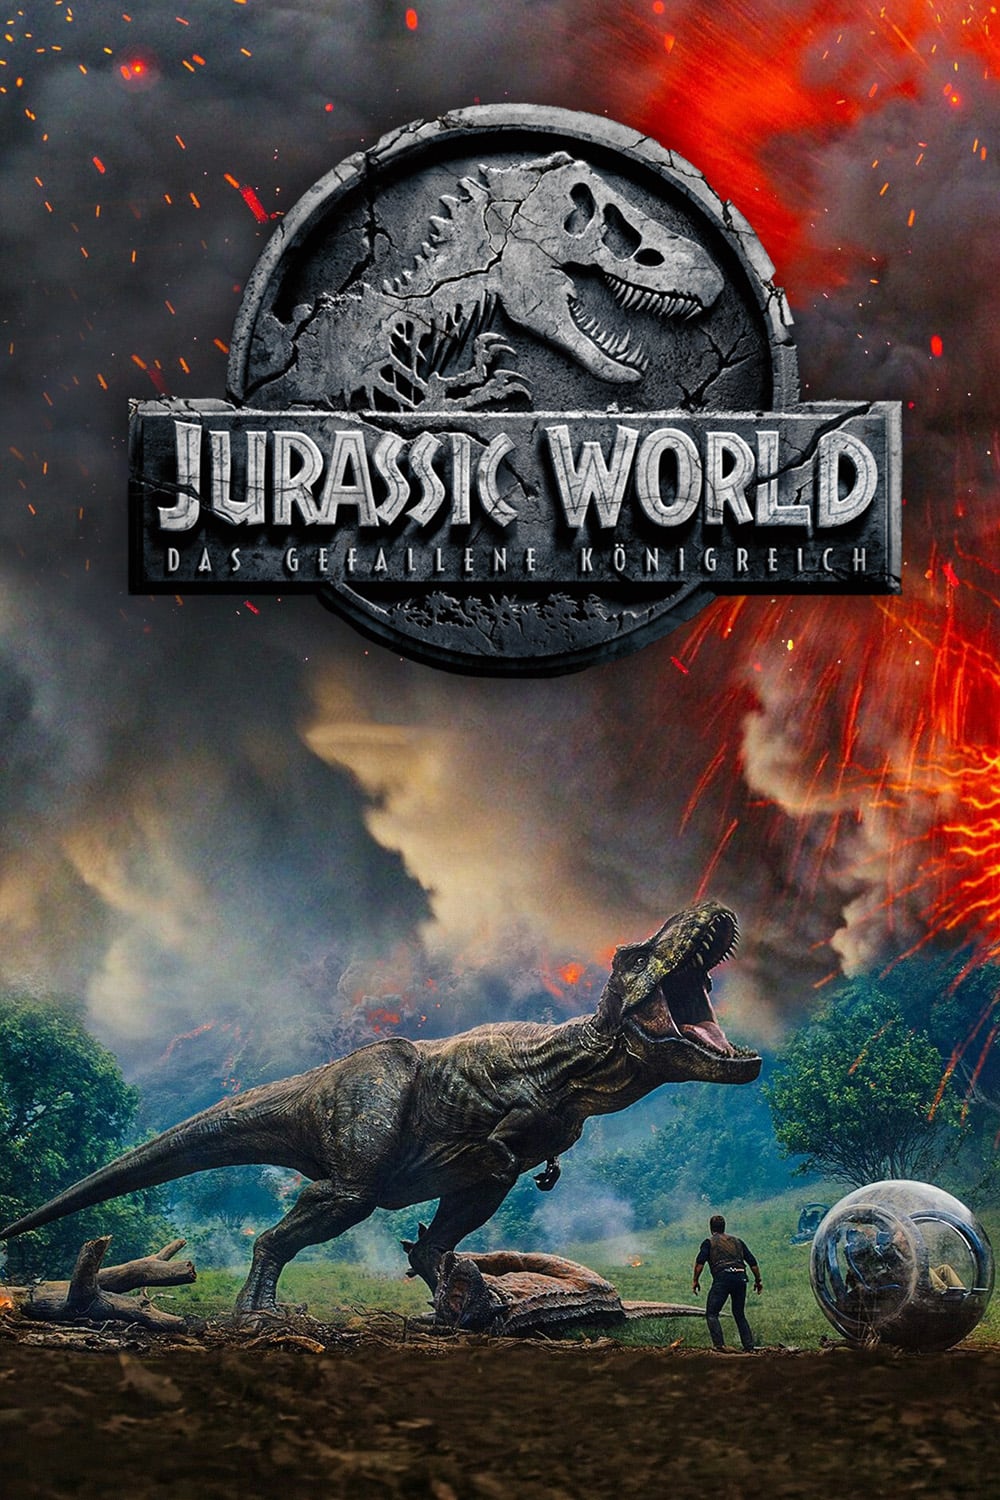 Jurassic World 2 Das Gefallene Koenigreich